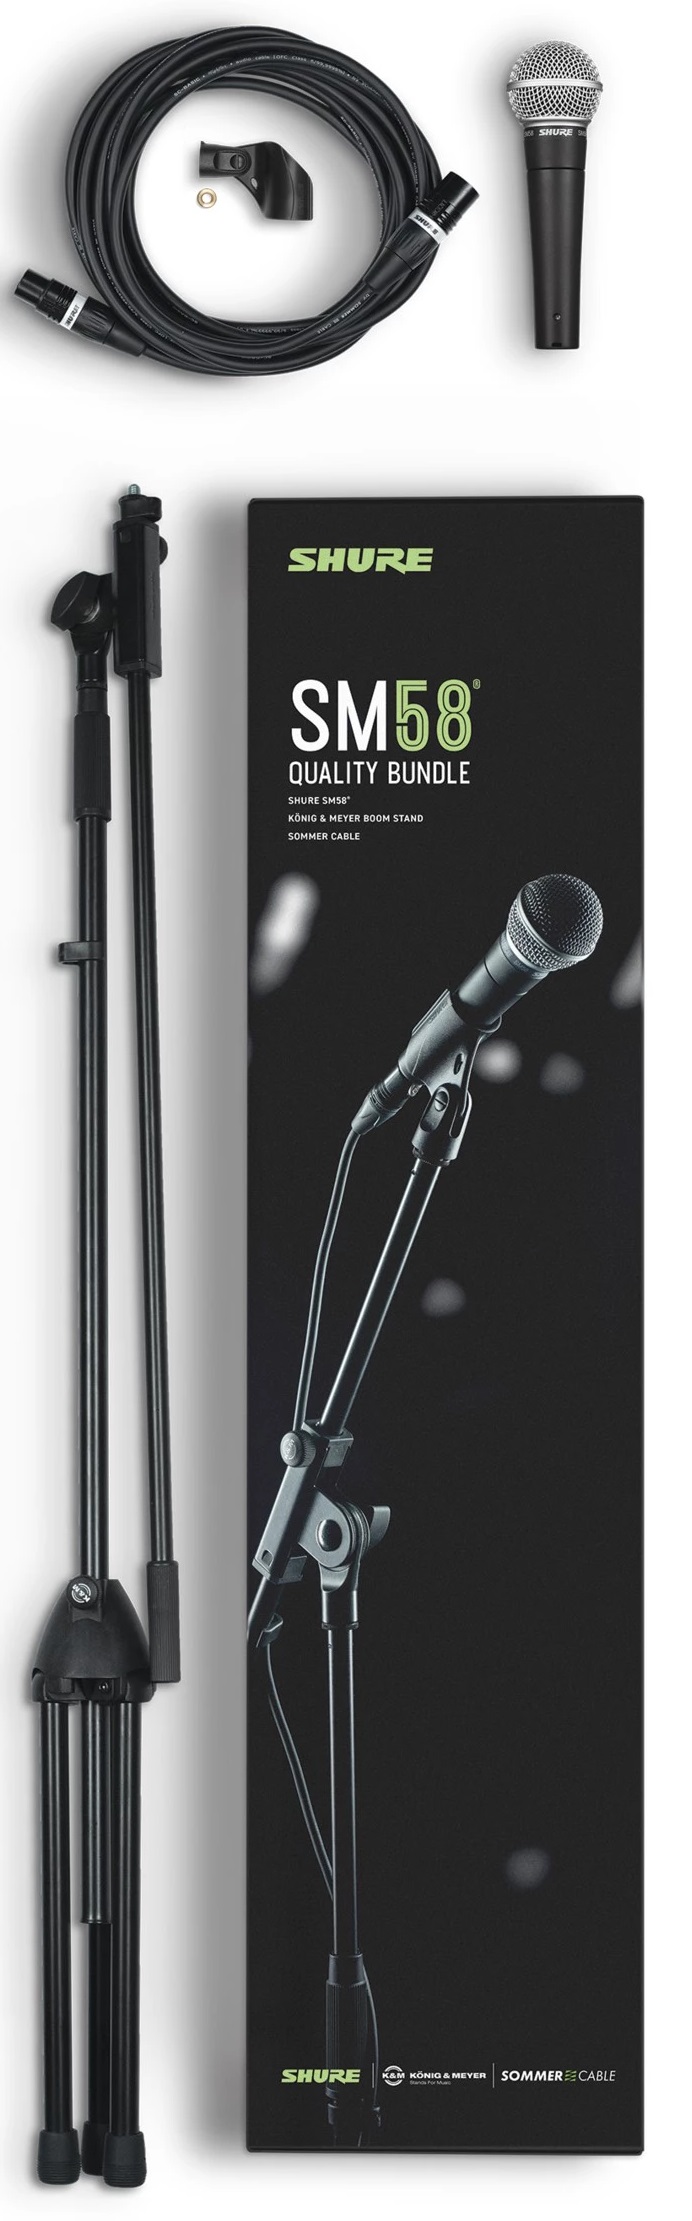 Billede af Shure SM58 Quality Bundle mikrofonsæt